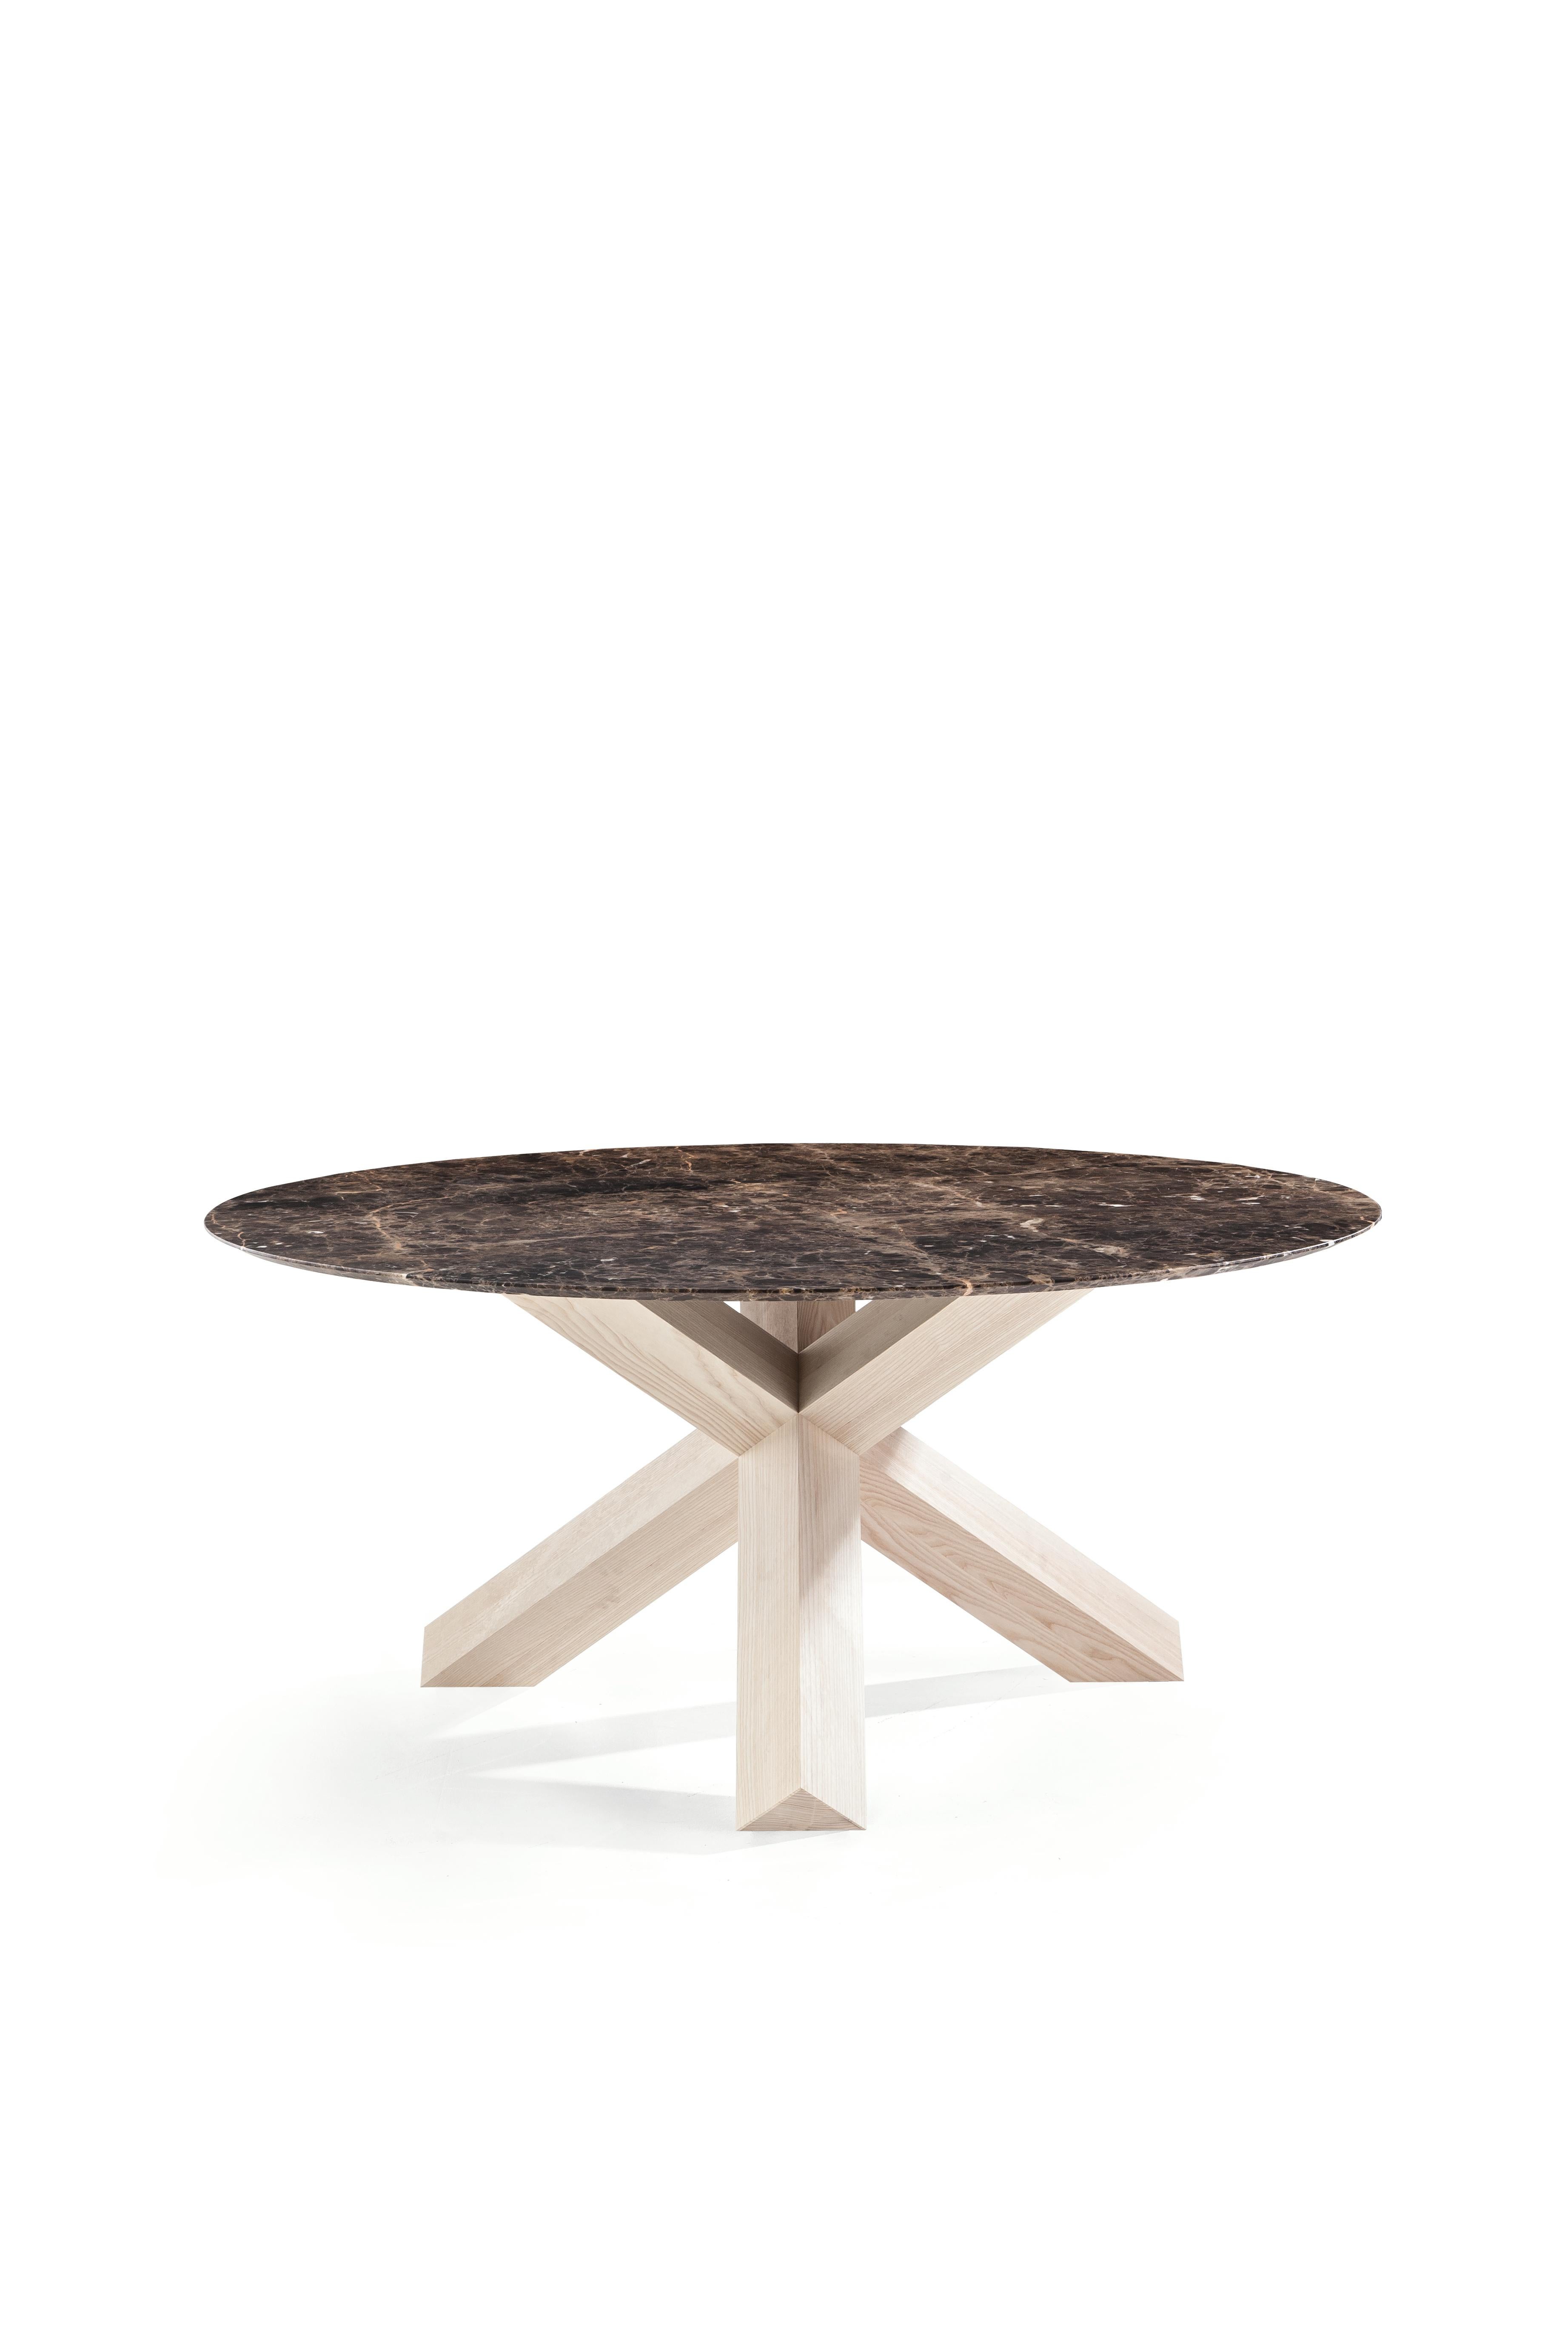 Mario Bellini La Rotonda Table by Cassina For Sale 4